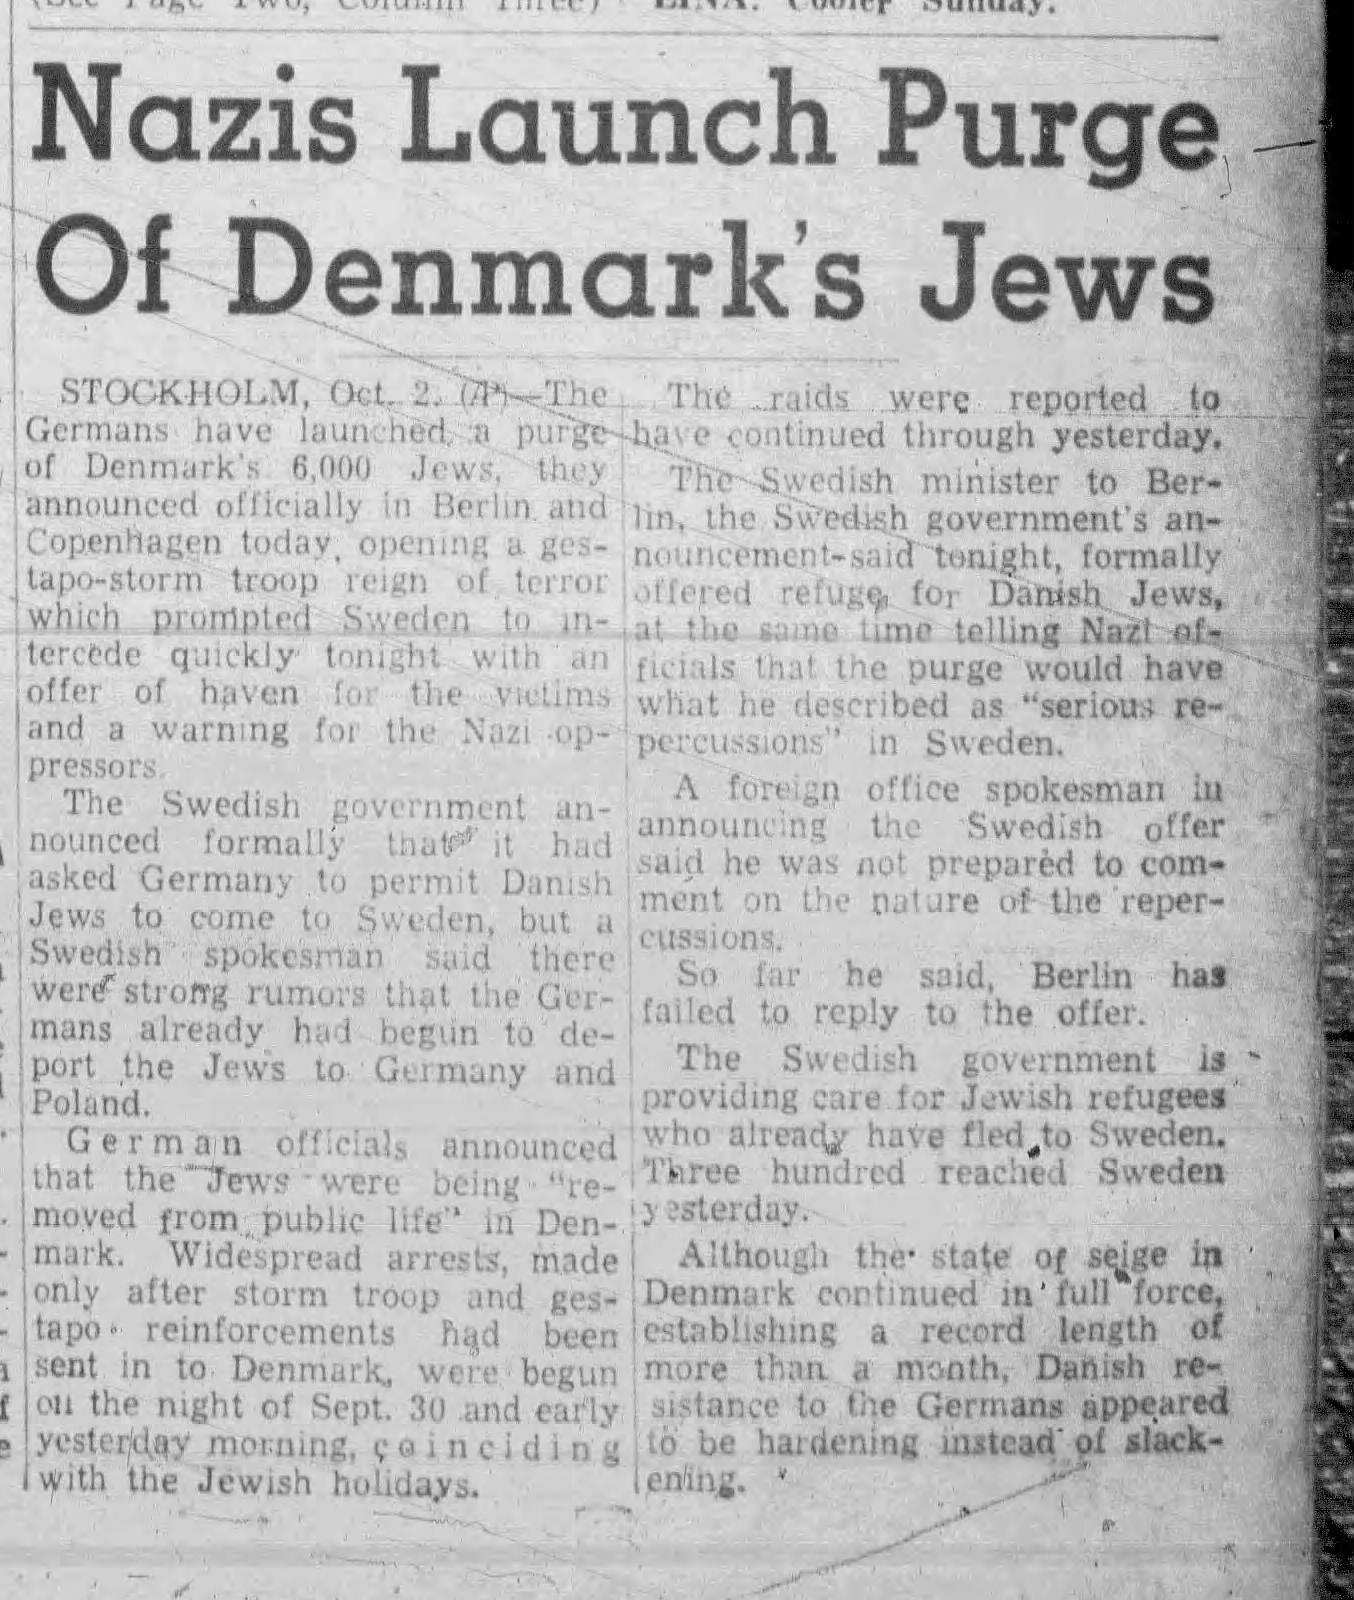 Nazis Launch Purge Of Denmark's Jews